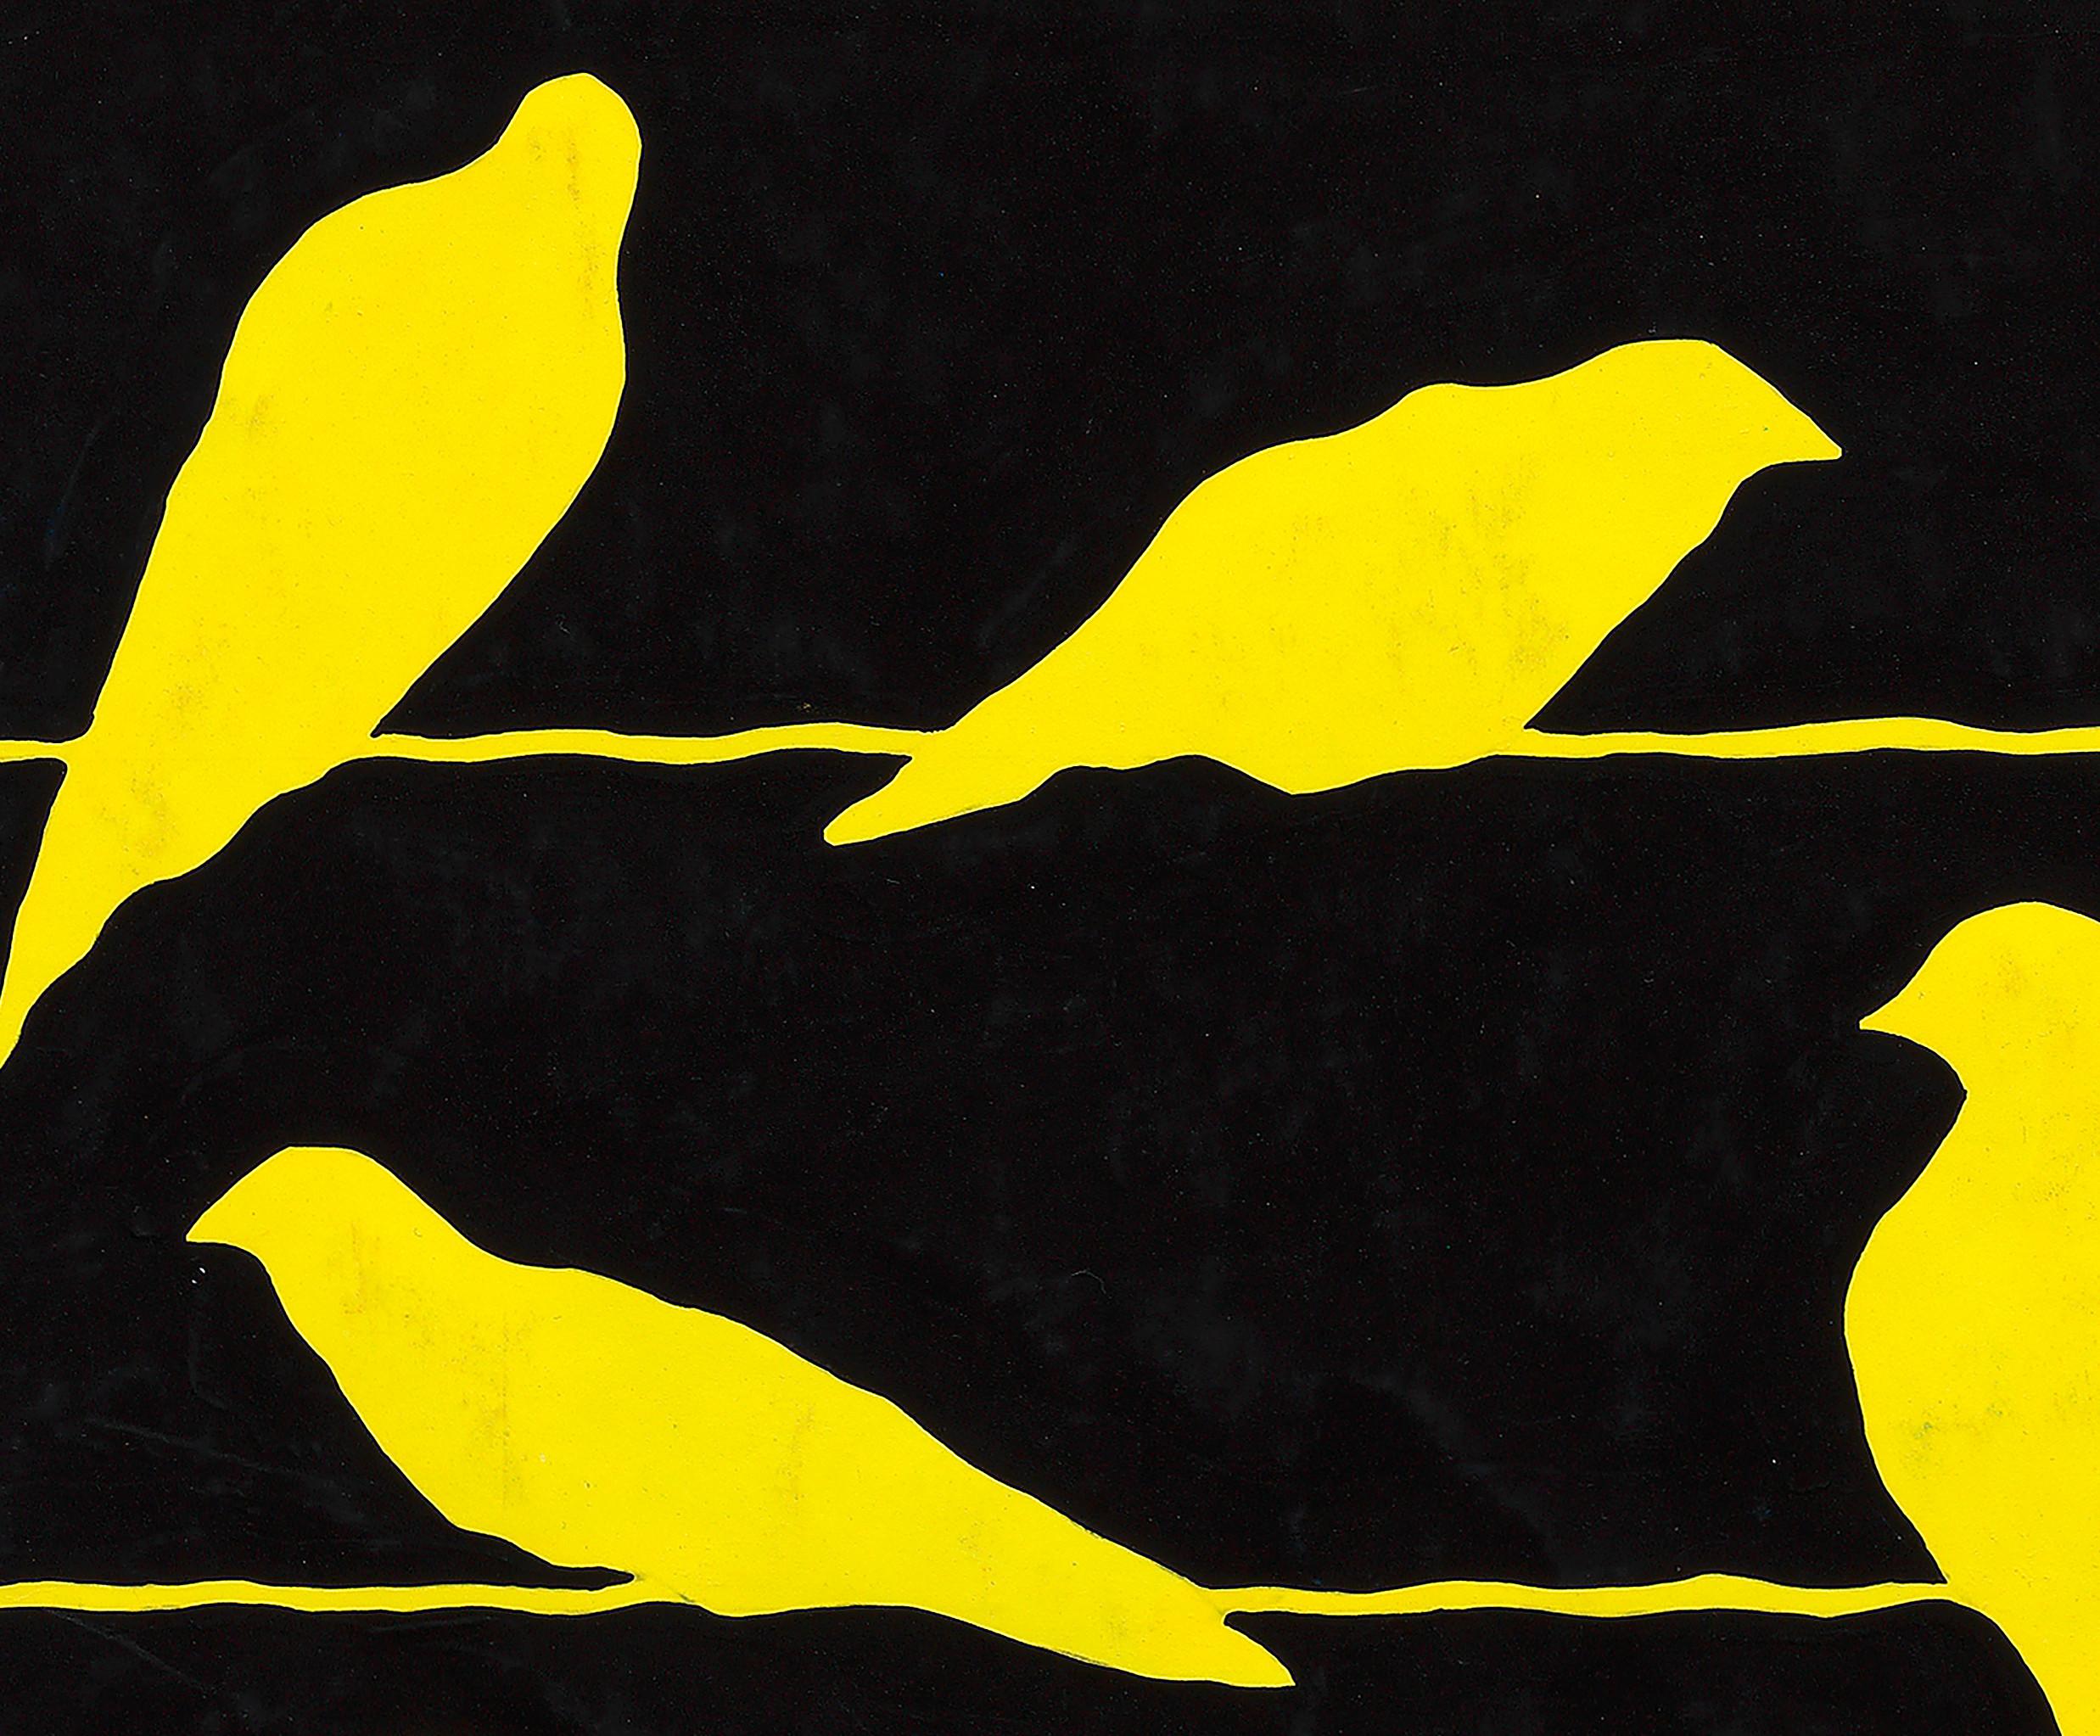 Conception textile originale des années 70 peinte à la main à la gouache jaune et noire sur papier - Art de Unknown